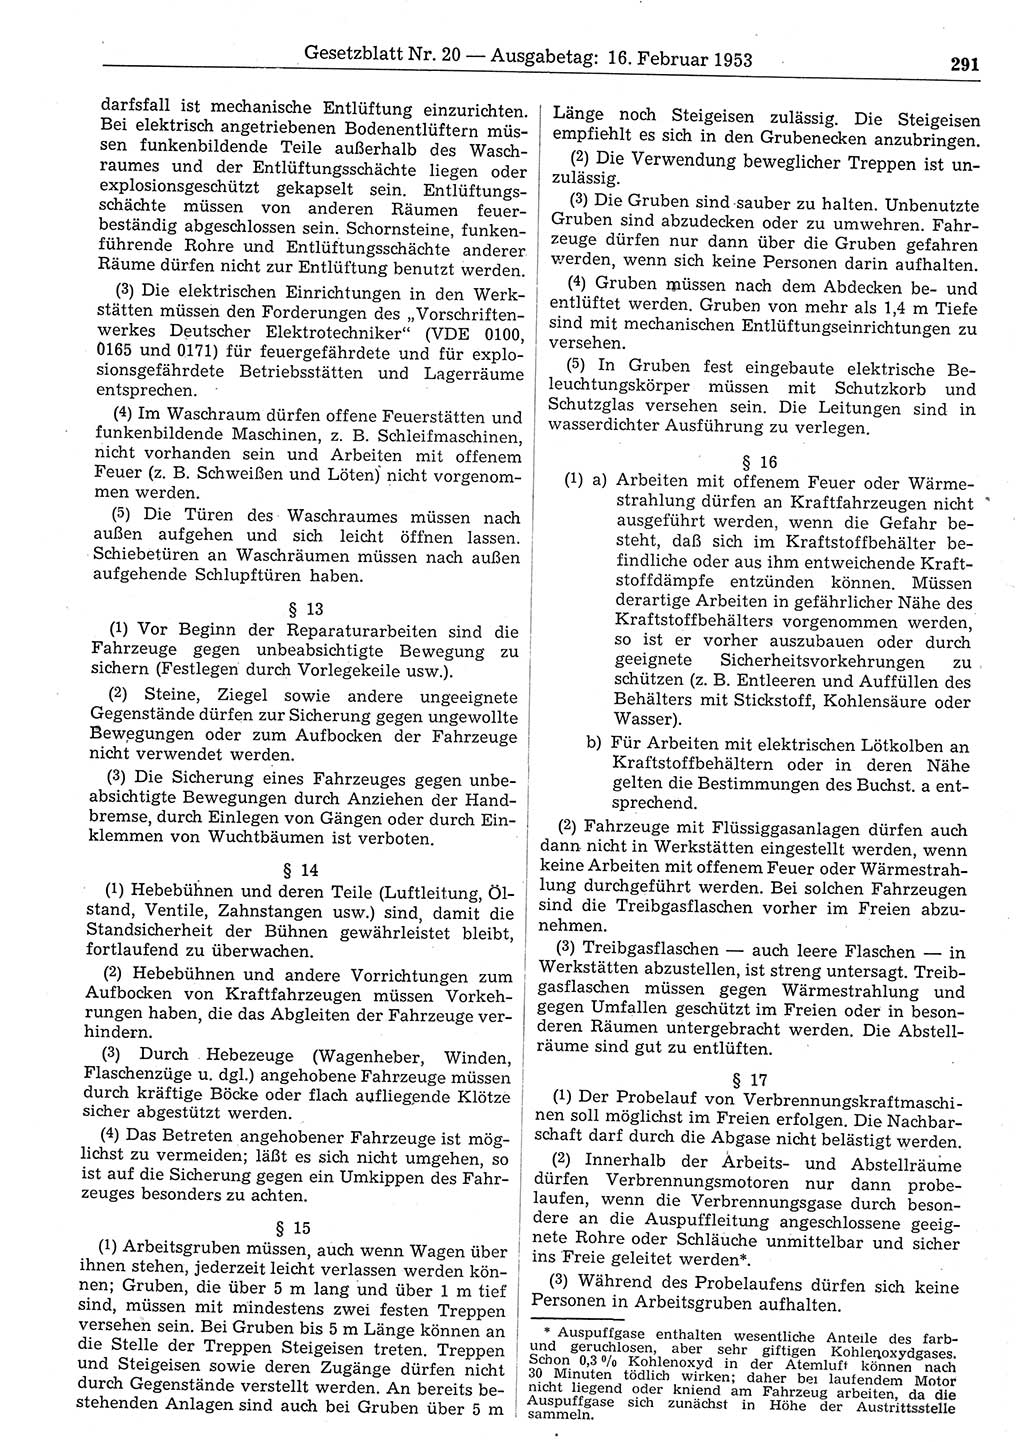 Gesetzblatt (GBl.) der Deutschen Demokratischen Republik (DDR) 1953, Seite 291 (GBl. DDR 1953, S. 291)